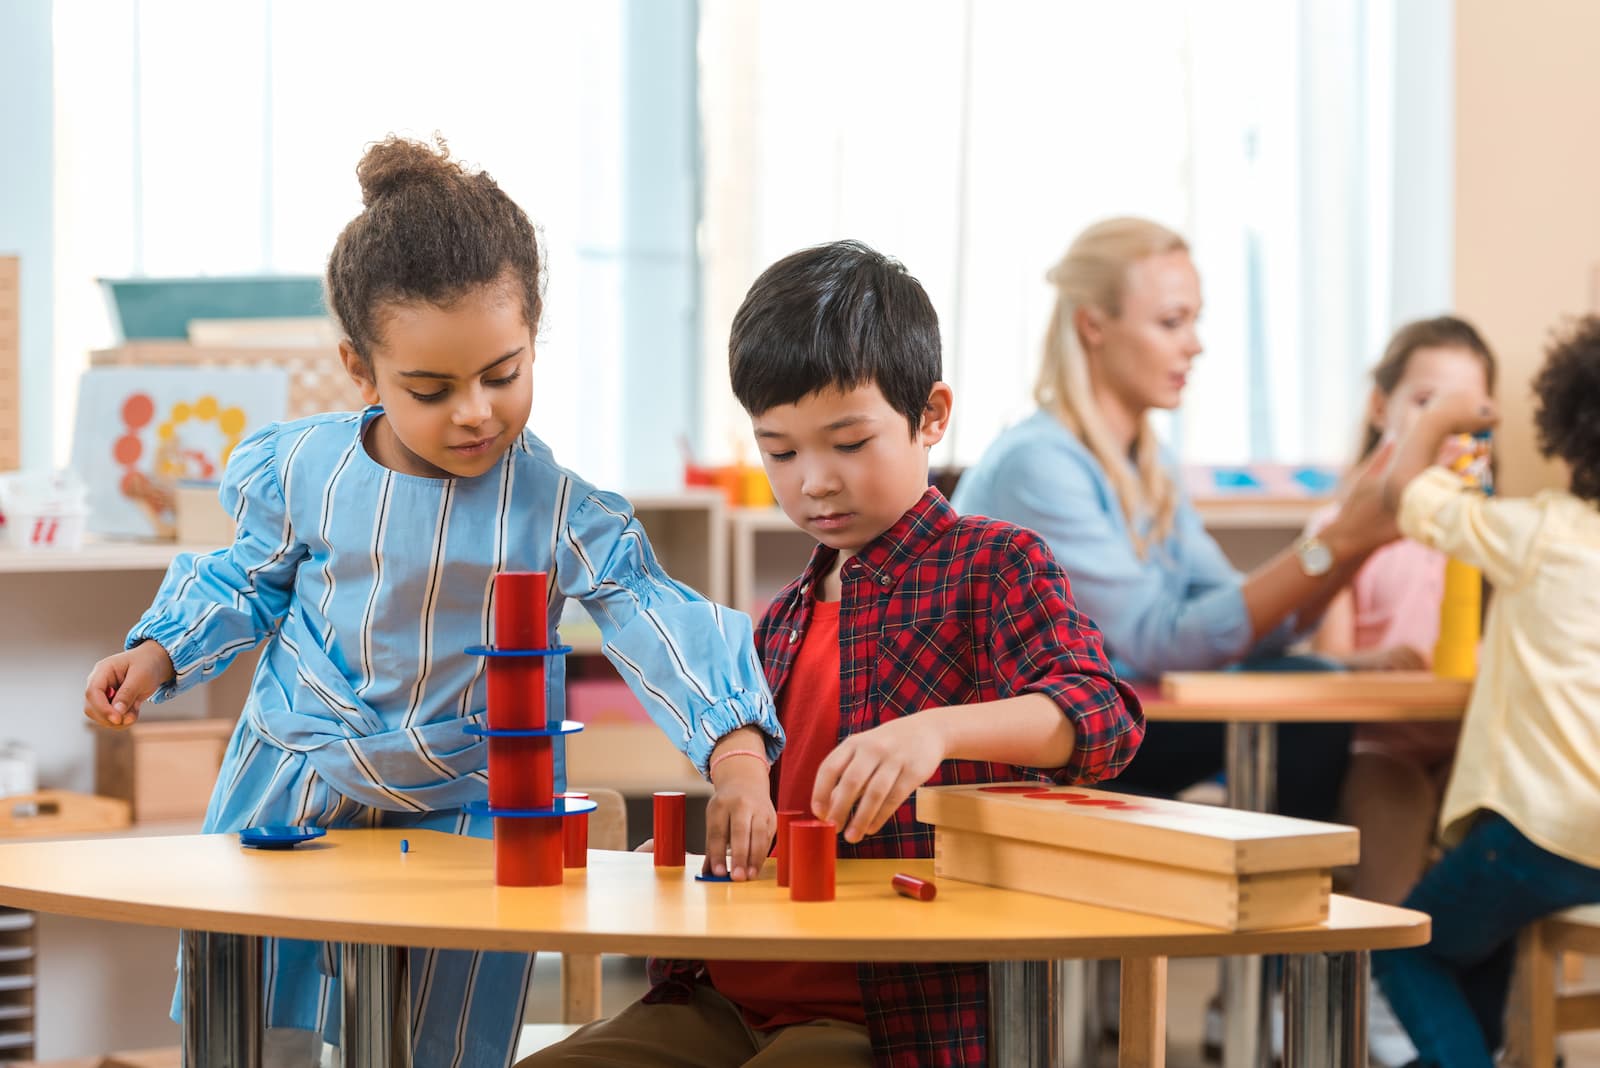 metodo montessori niño y niña jugando en la escuela sobre una mesa